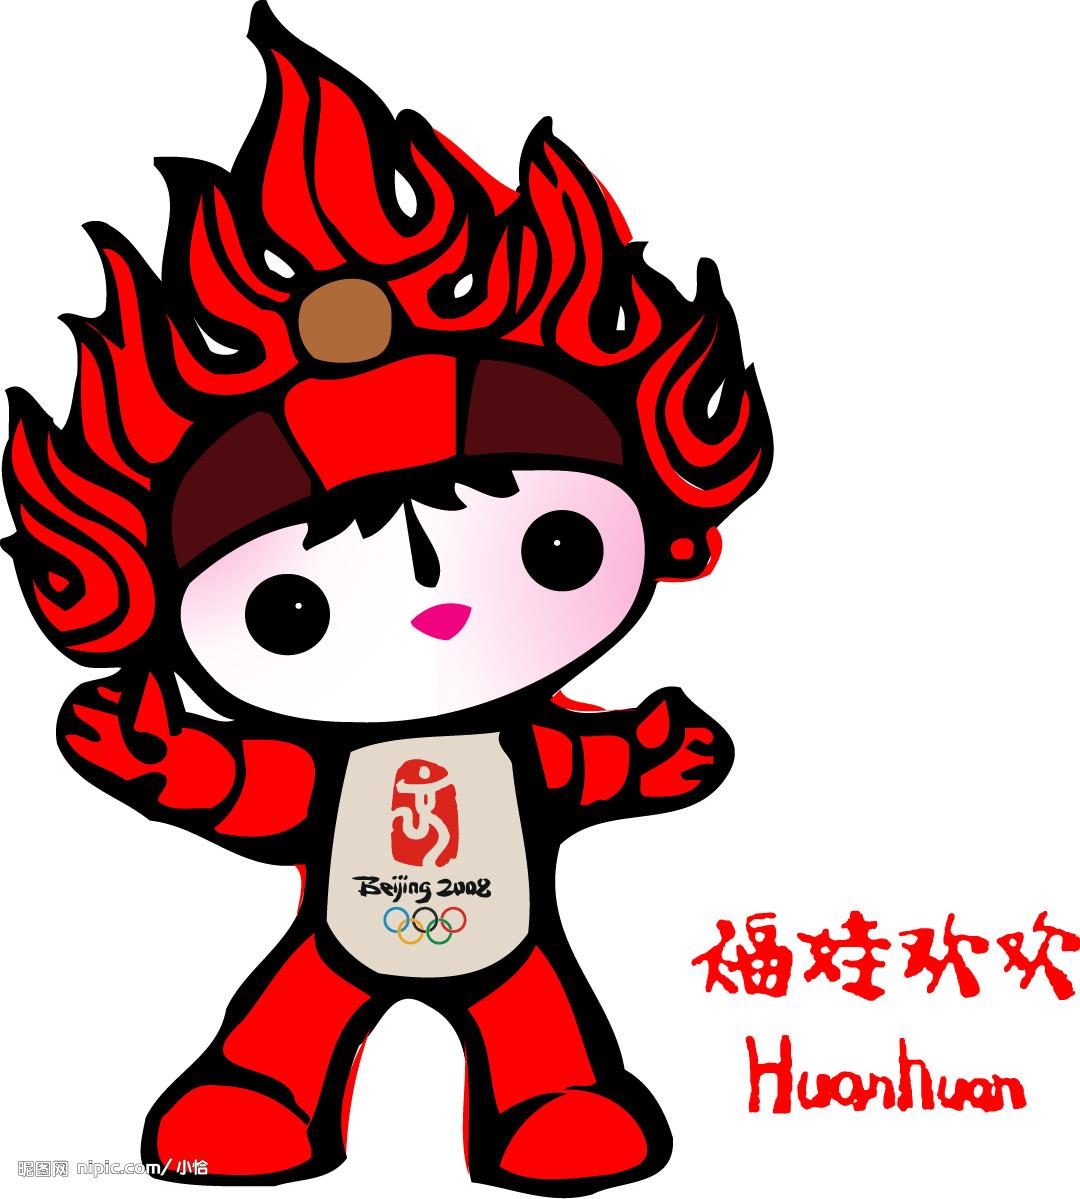 北京奥运会福娃,是福娃中的大哥哥.